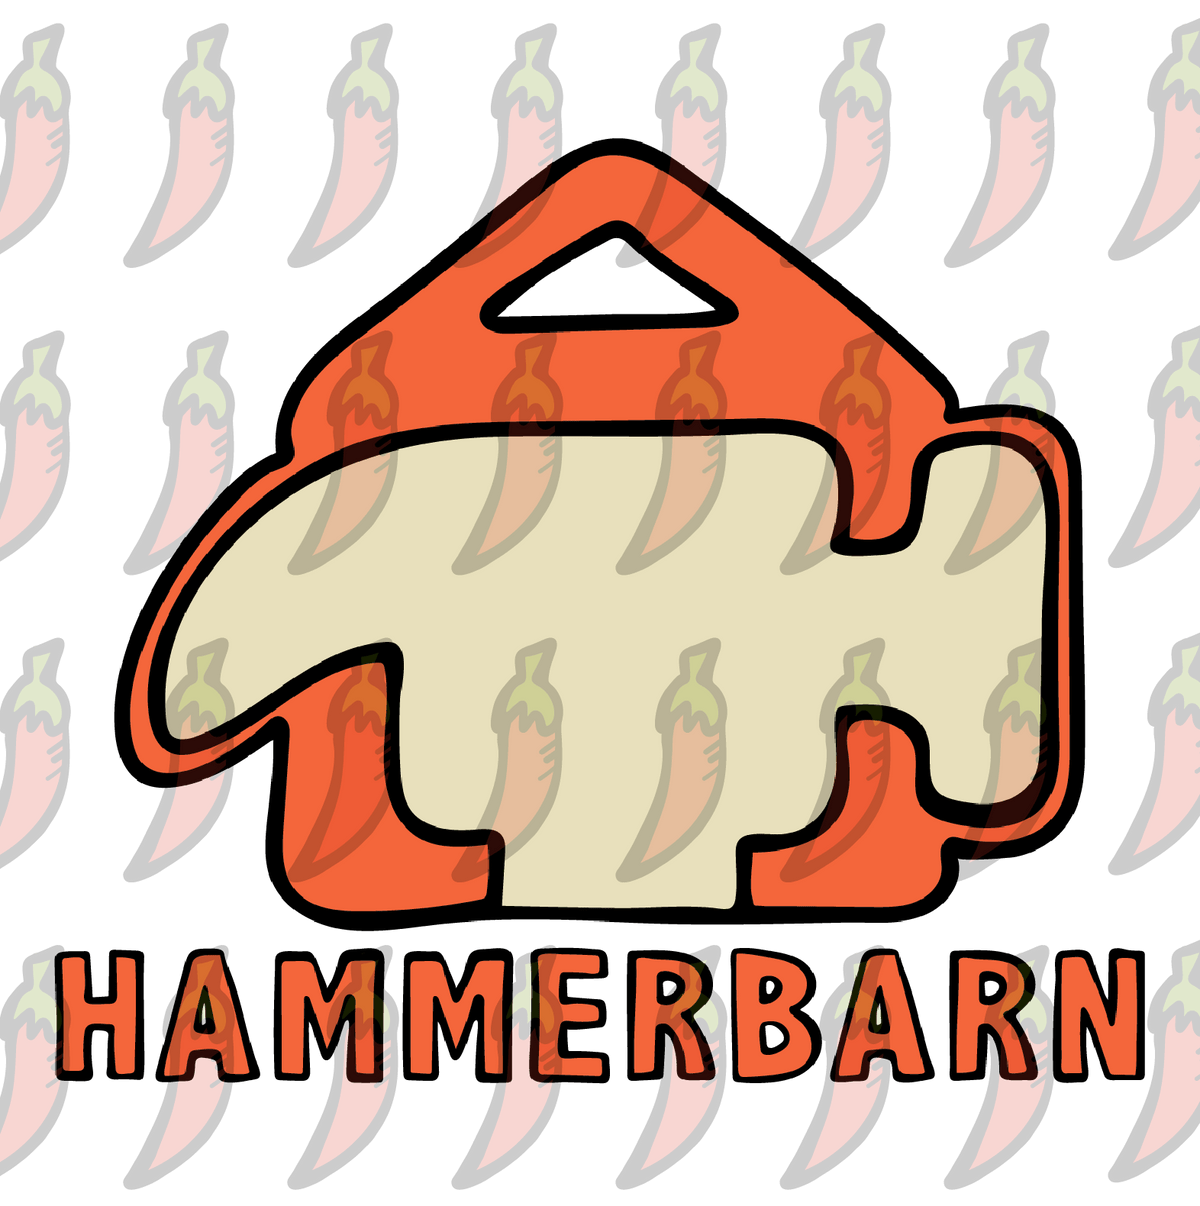 Hammerbarn 🔨 - Men's T Shirt